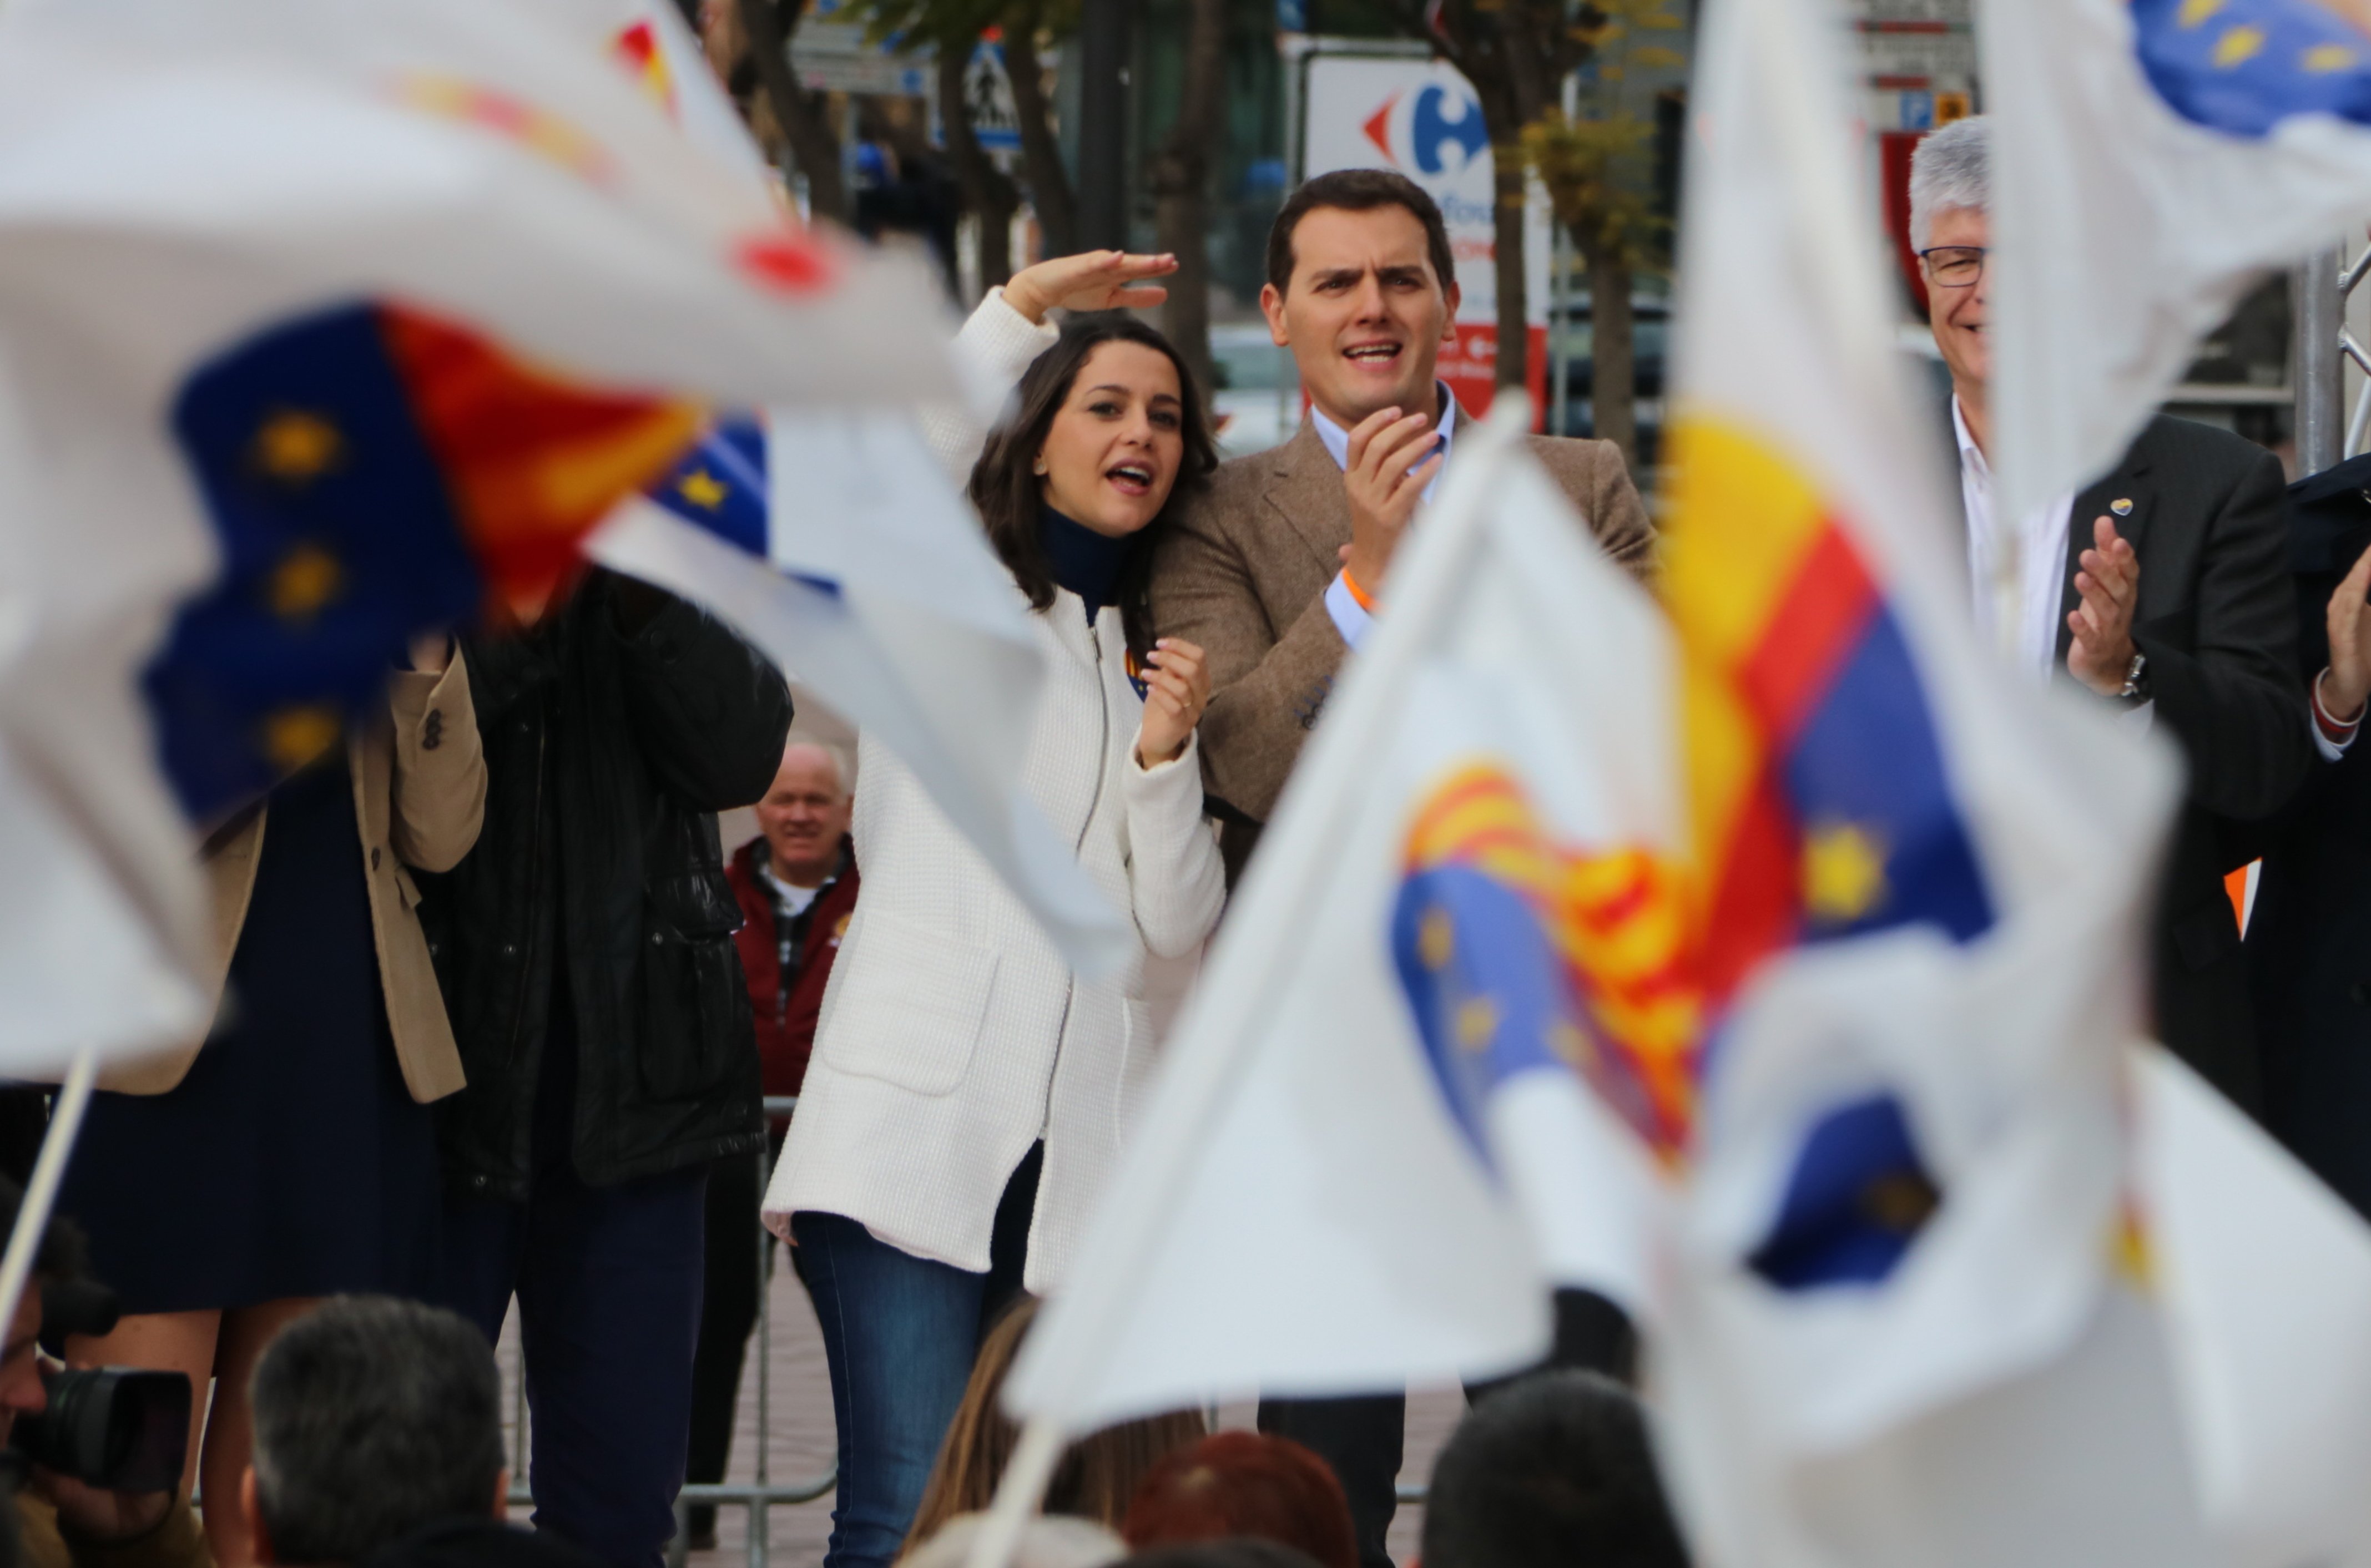 La Junta Electoral permet a Cs exhibir banderes d'Espanya a Santa Coloma